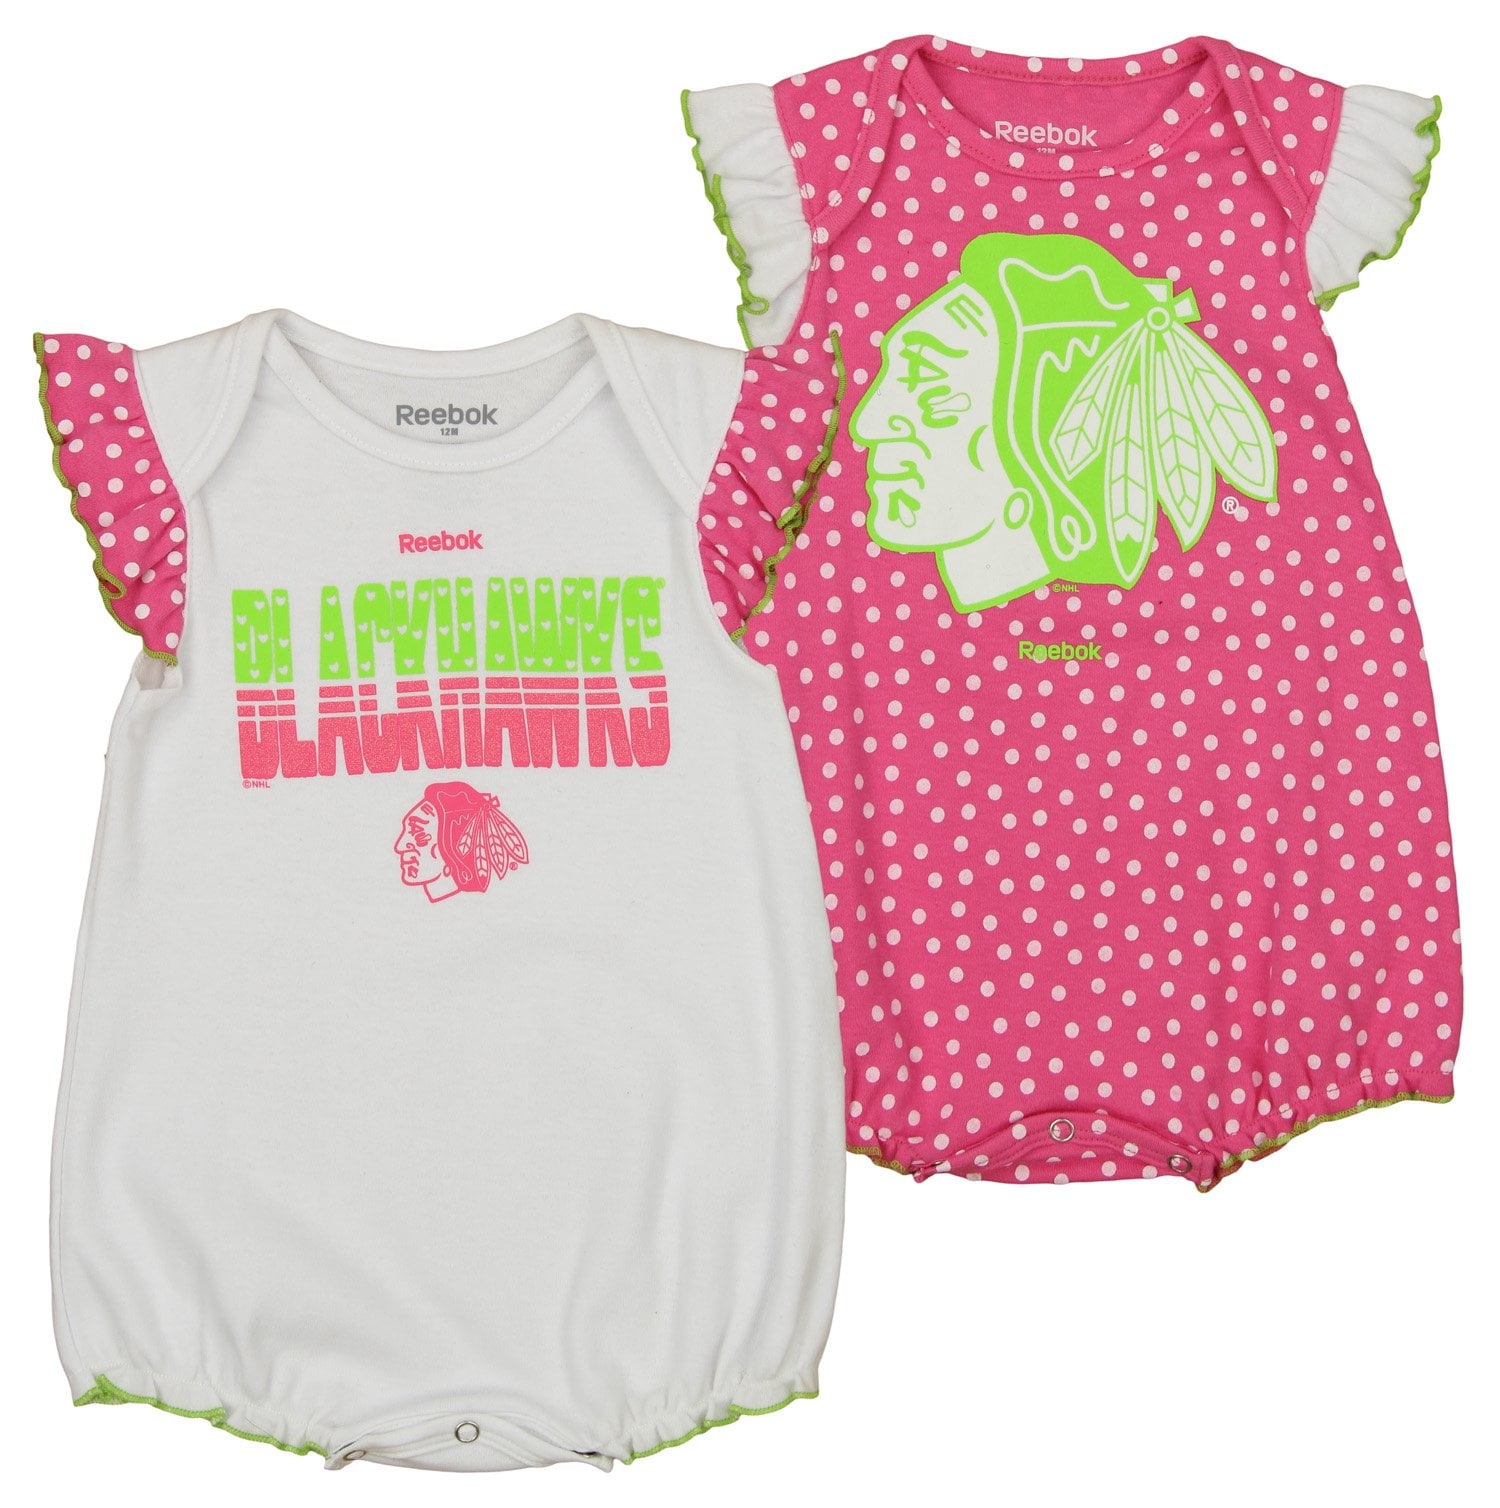 reebok infant clothing